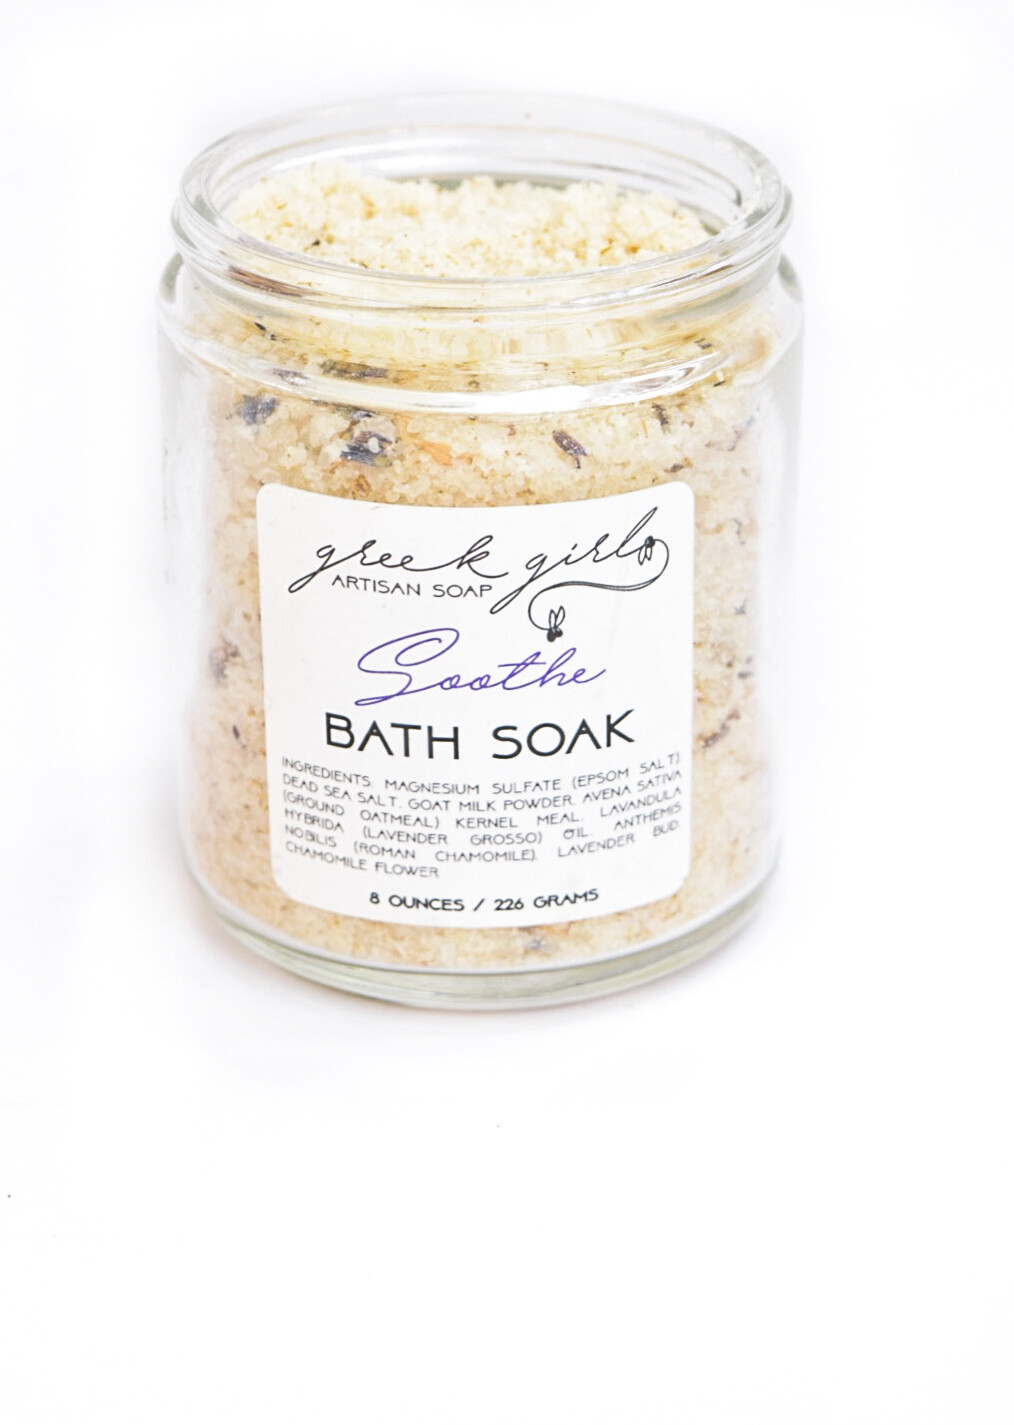 Soothe Bath Soak